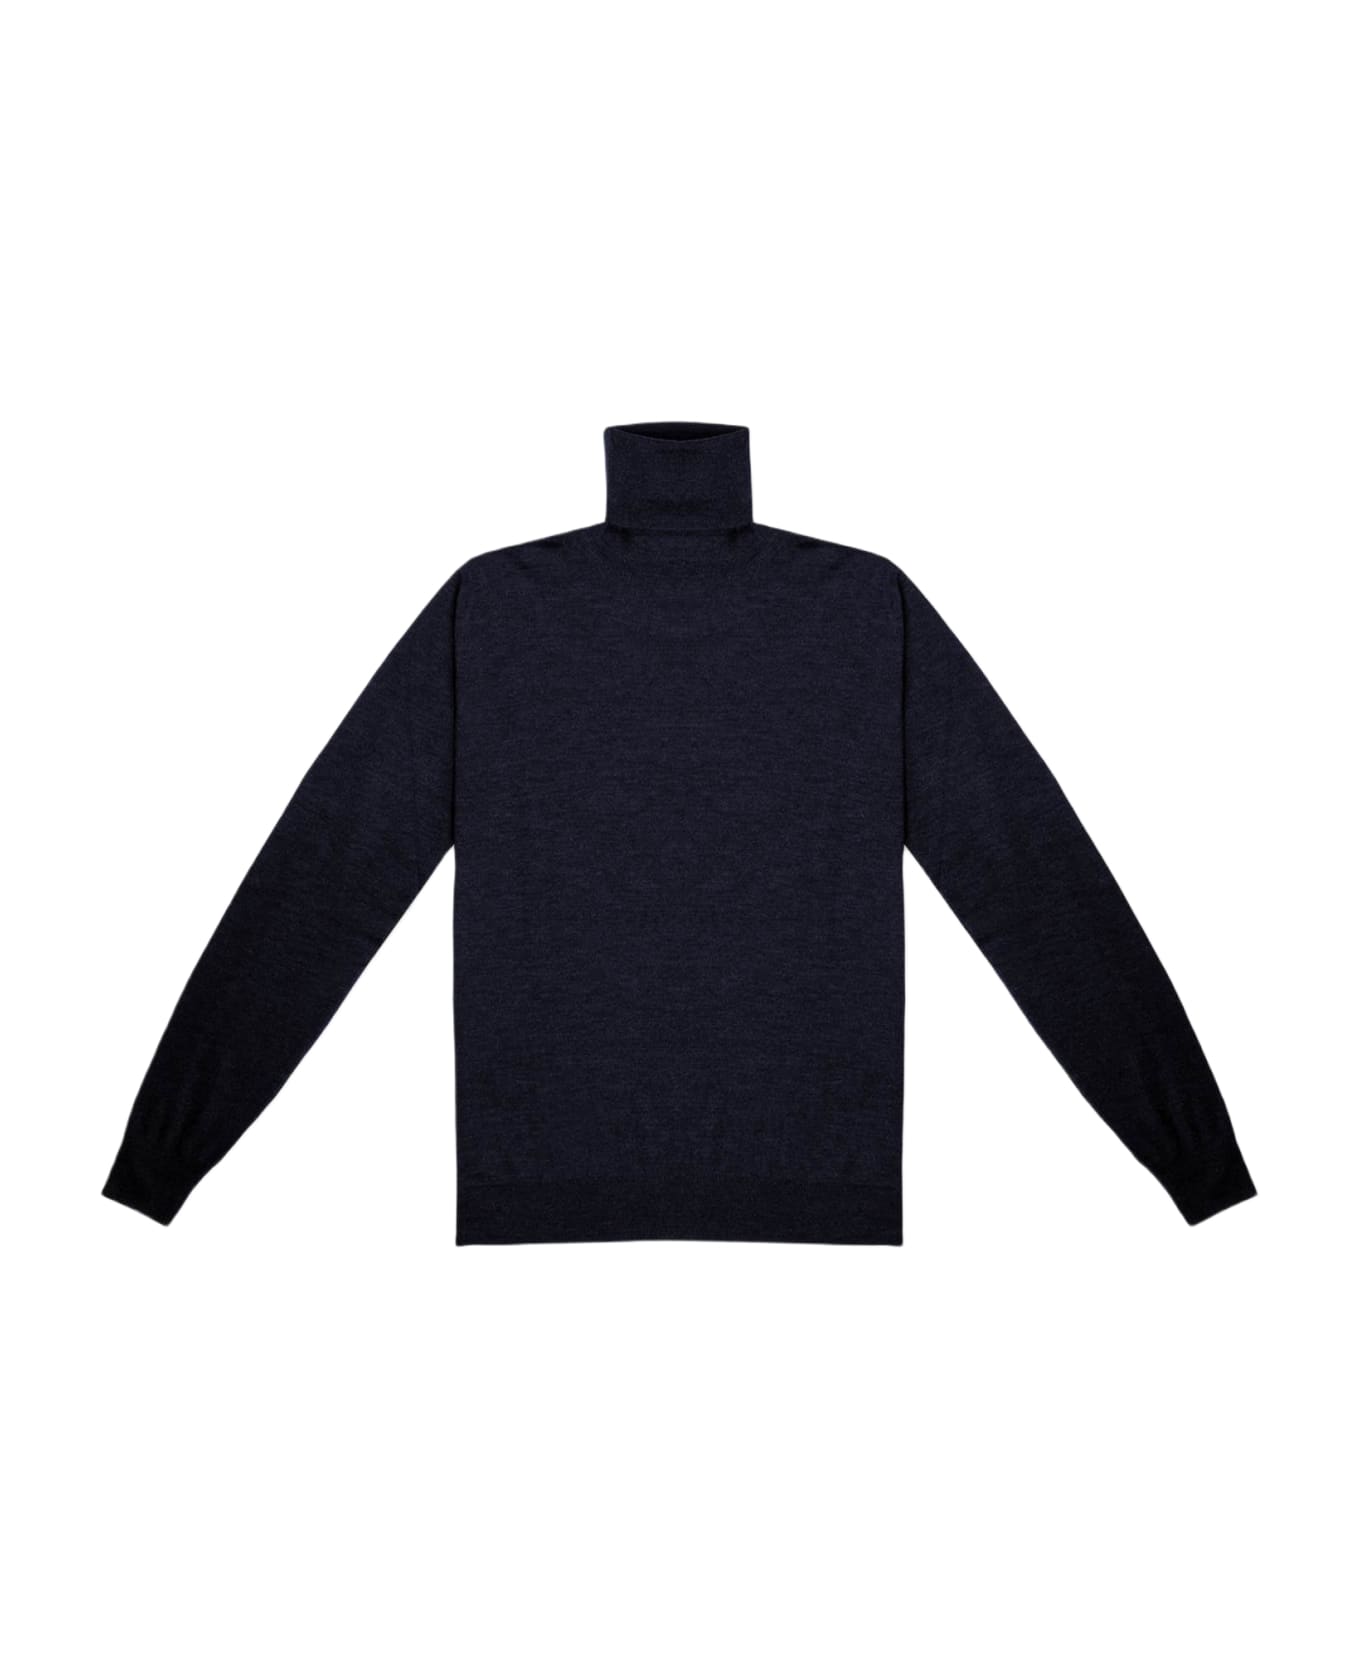 Larusmiani Turtleneck Sweater 'pullman' Sweater - Navy